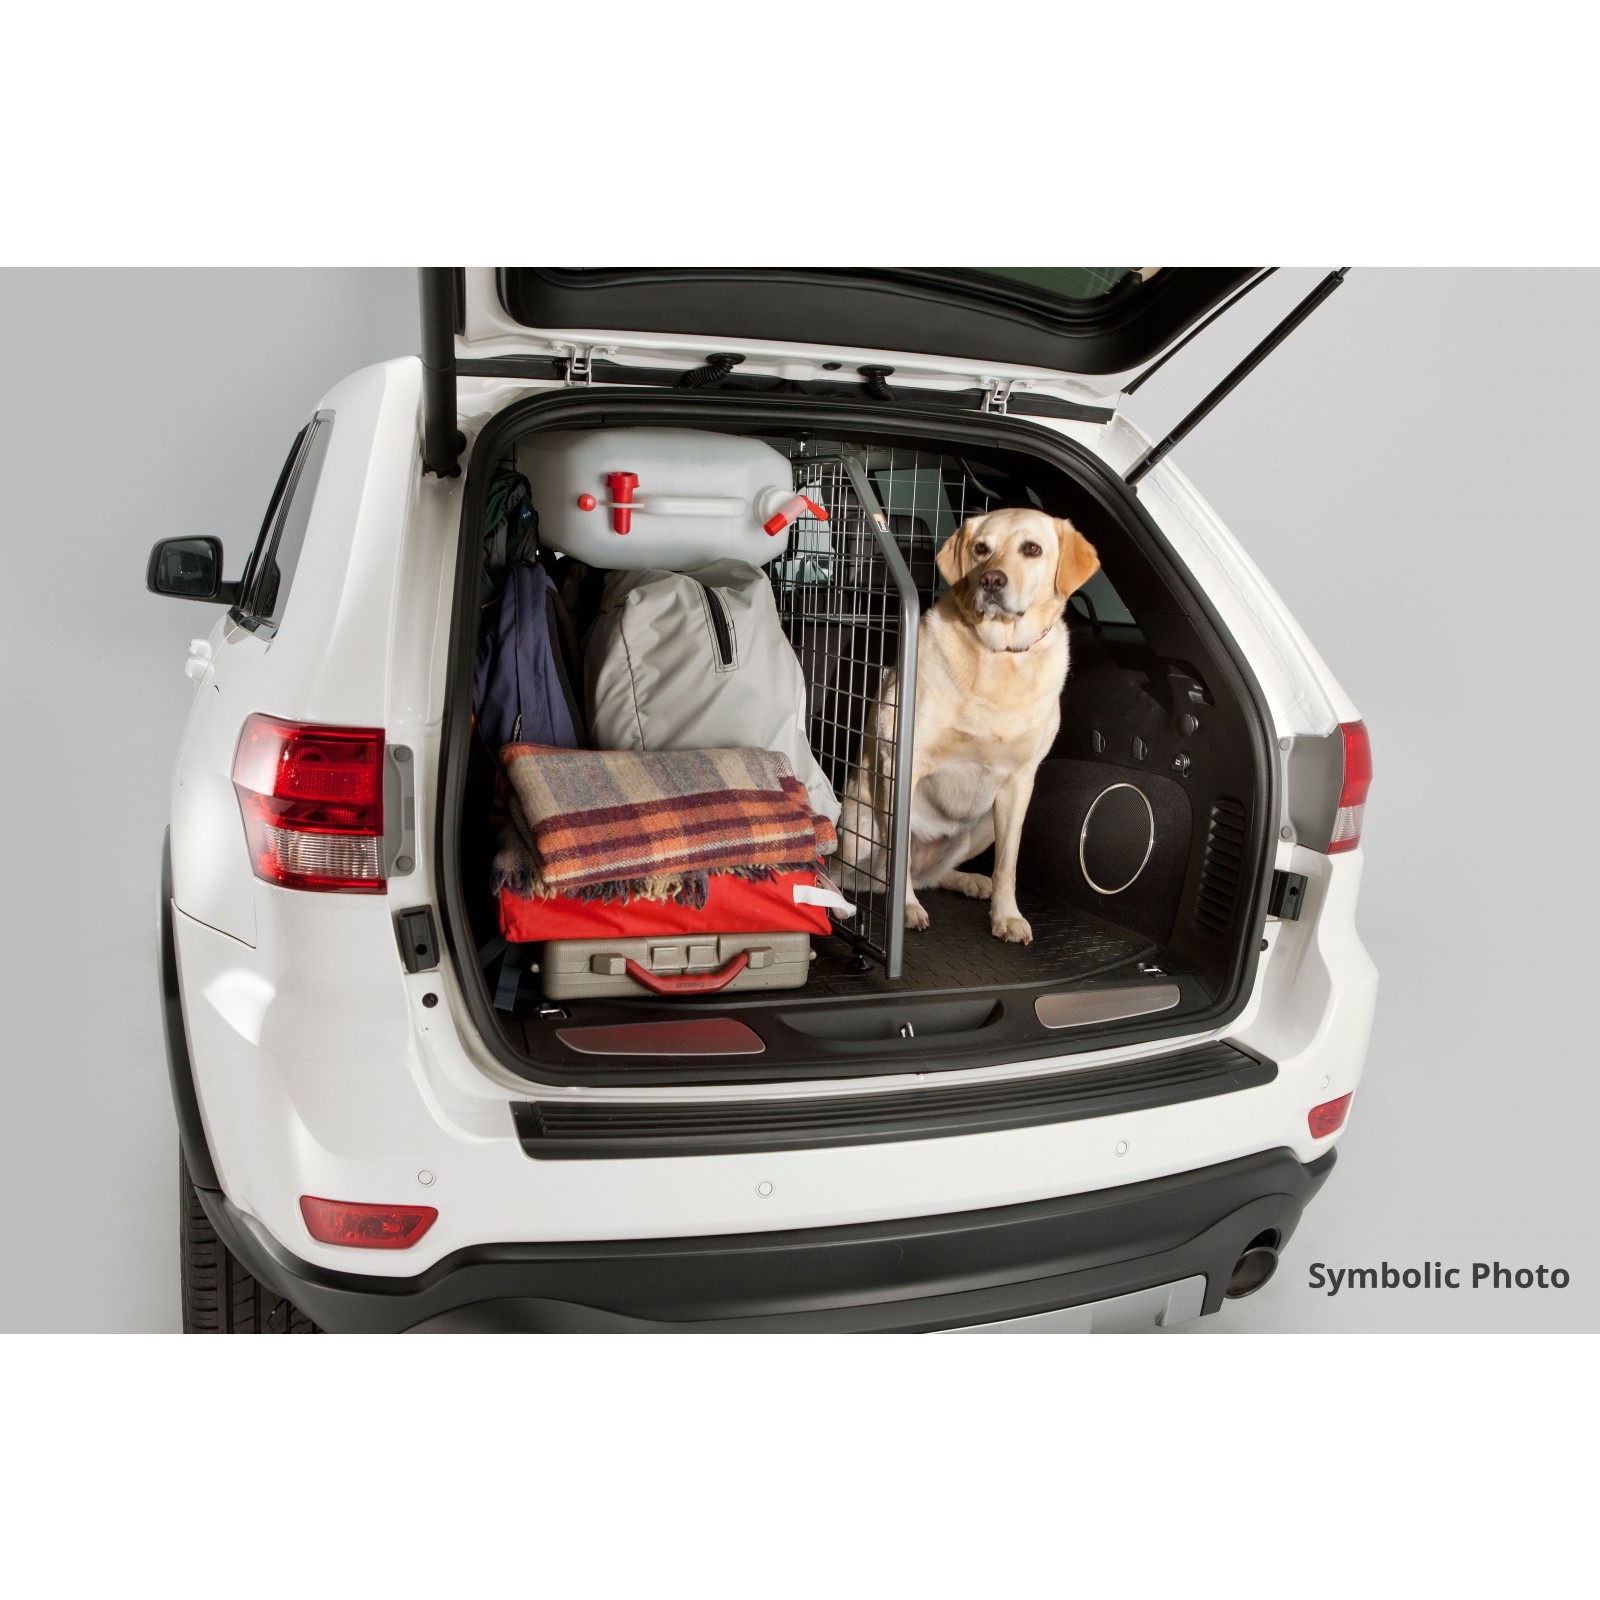 SOUTES Protector Maletero Coche Perros, para BMW 5er G31 Touring Wagon  7.Gen 2017-202 Impermeable Antideslizante Respaldo de Tela de Rebabas  Rasguños con Cubre Maletero Coche Perro : : Productos para mascotas